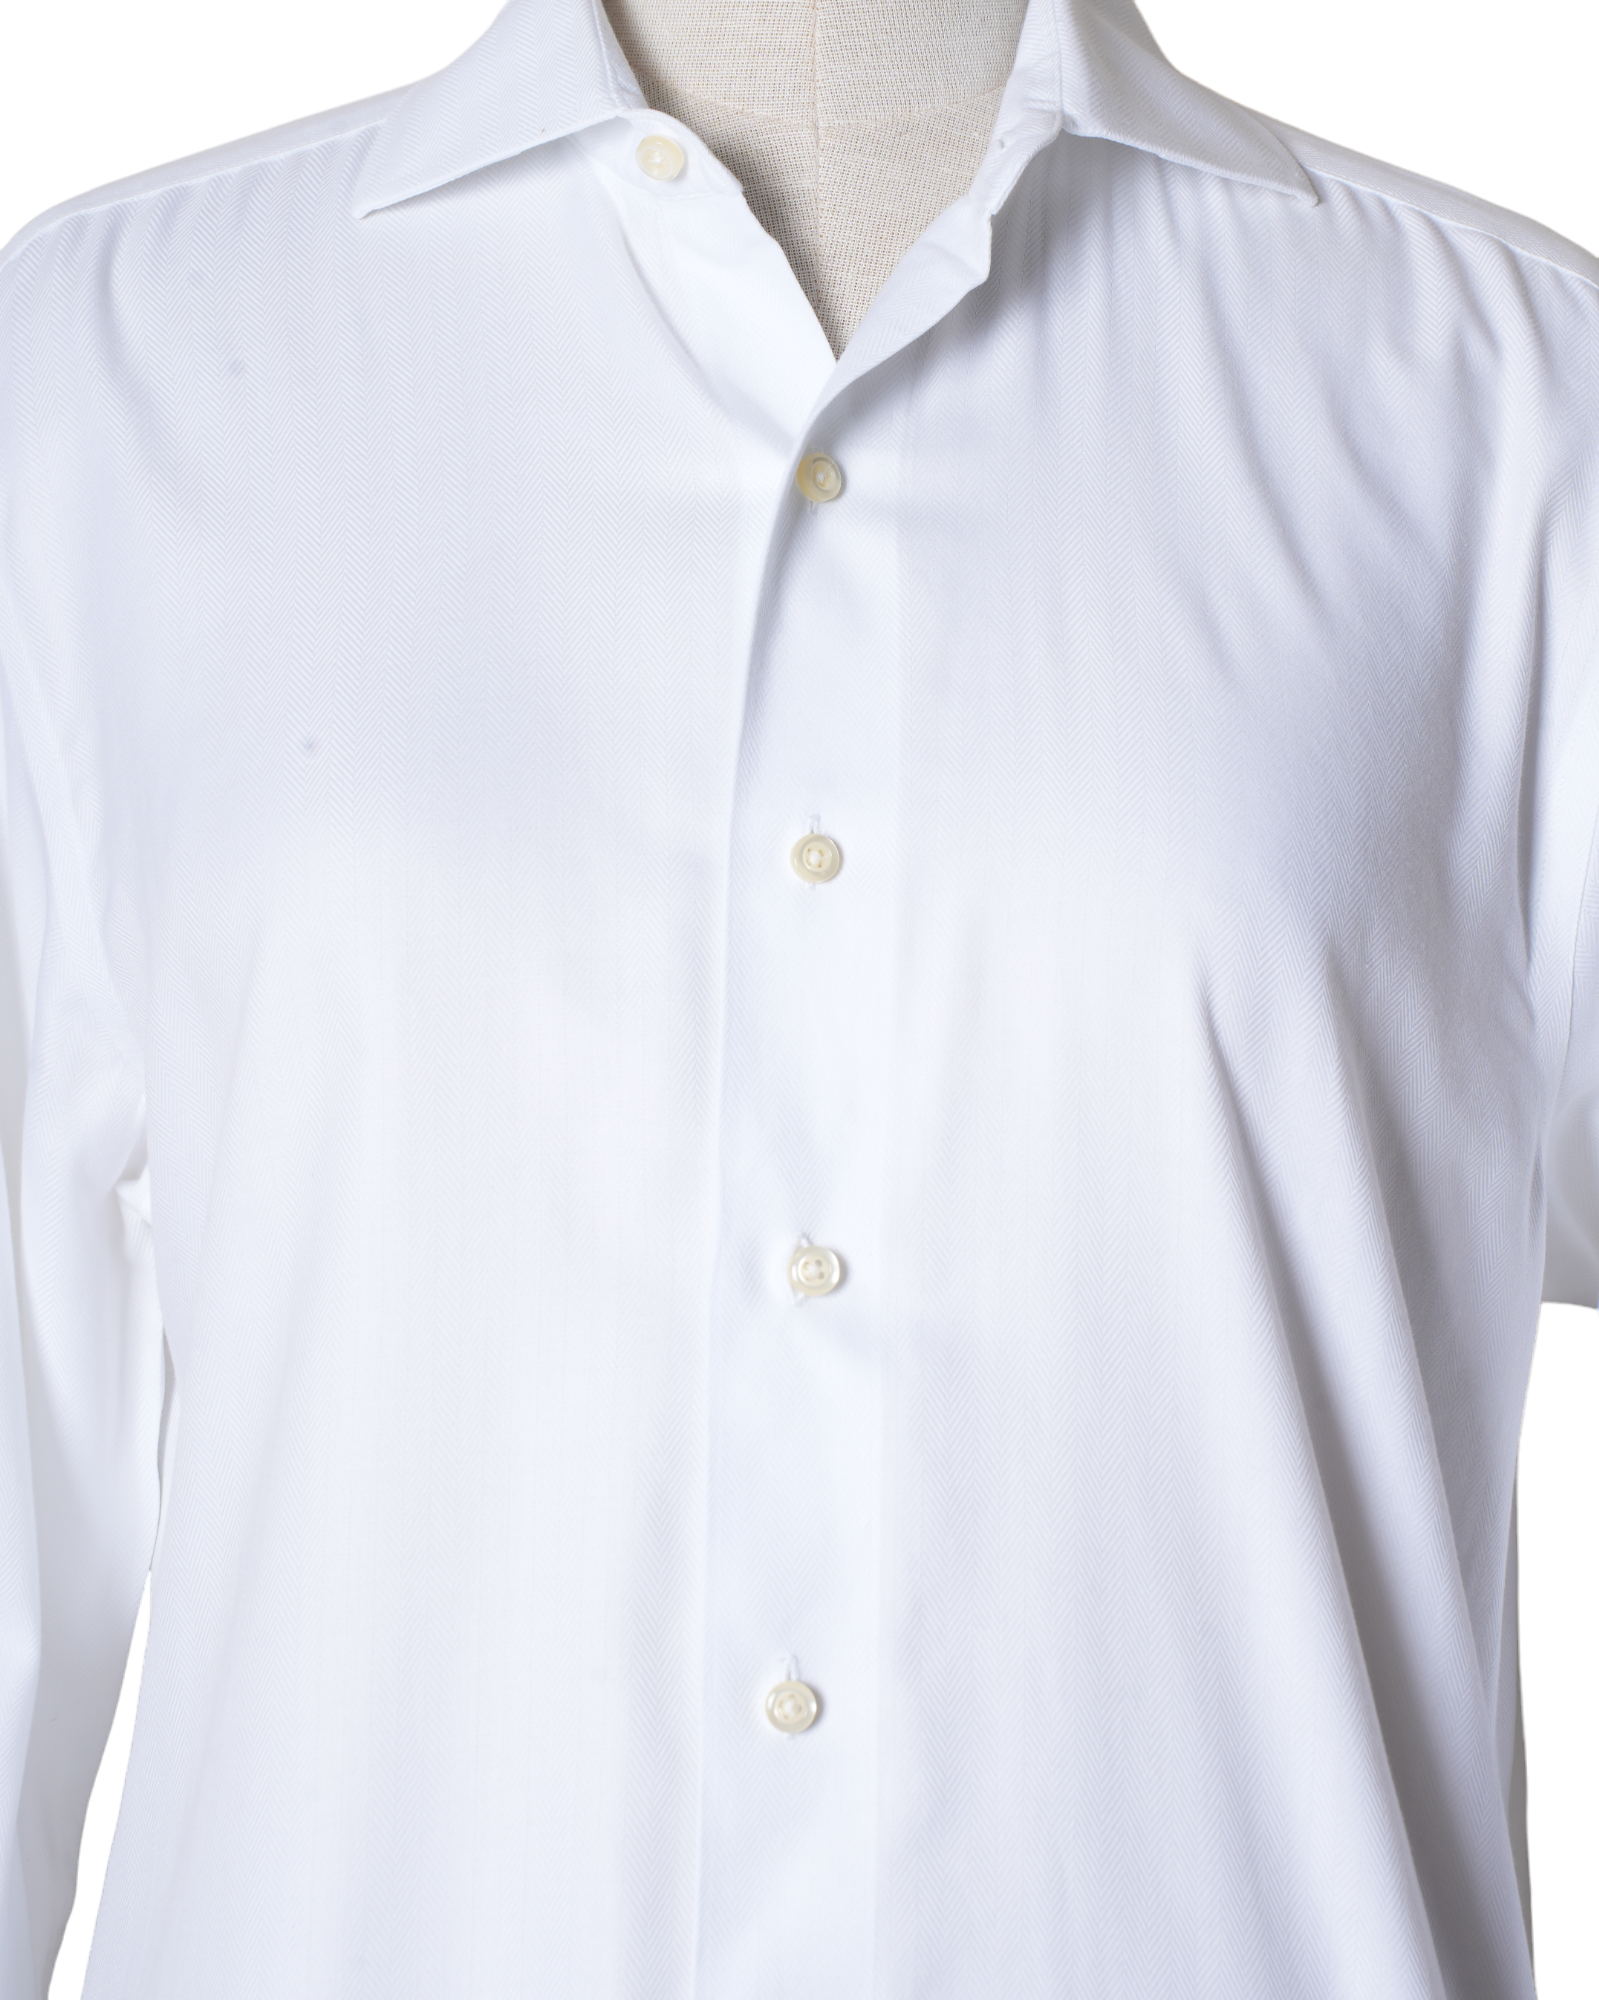 Brooks & Brothers Plain White Shirt